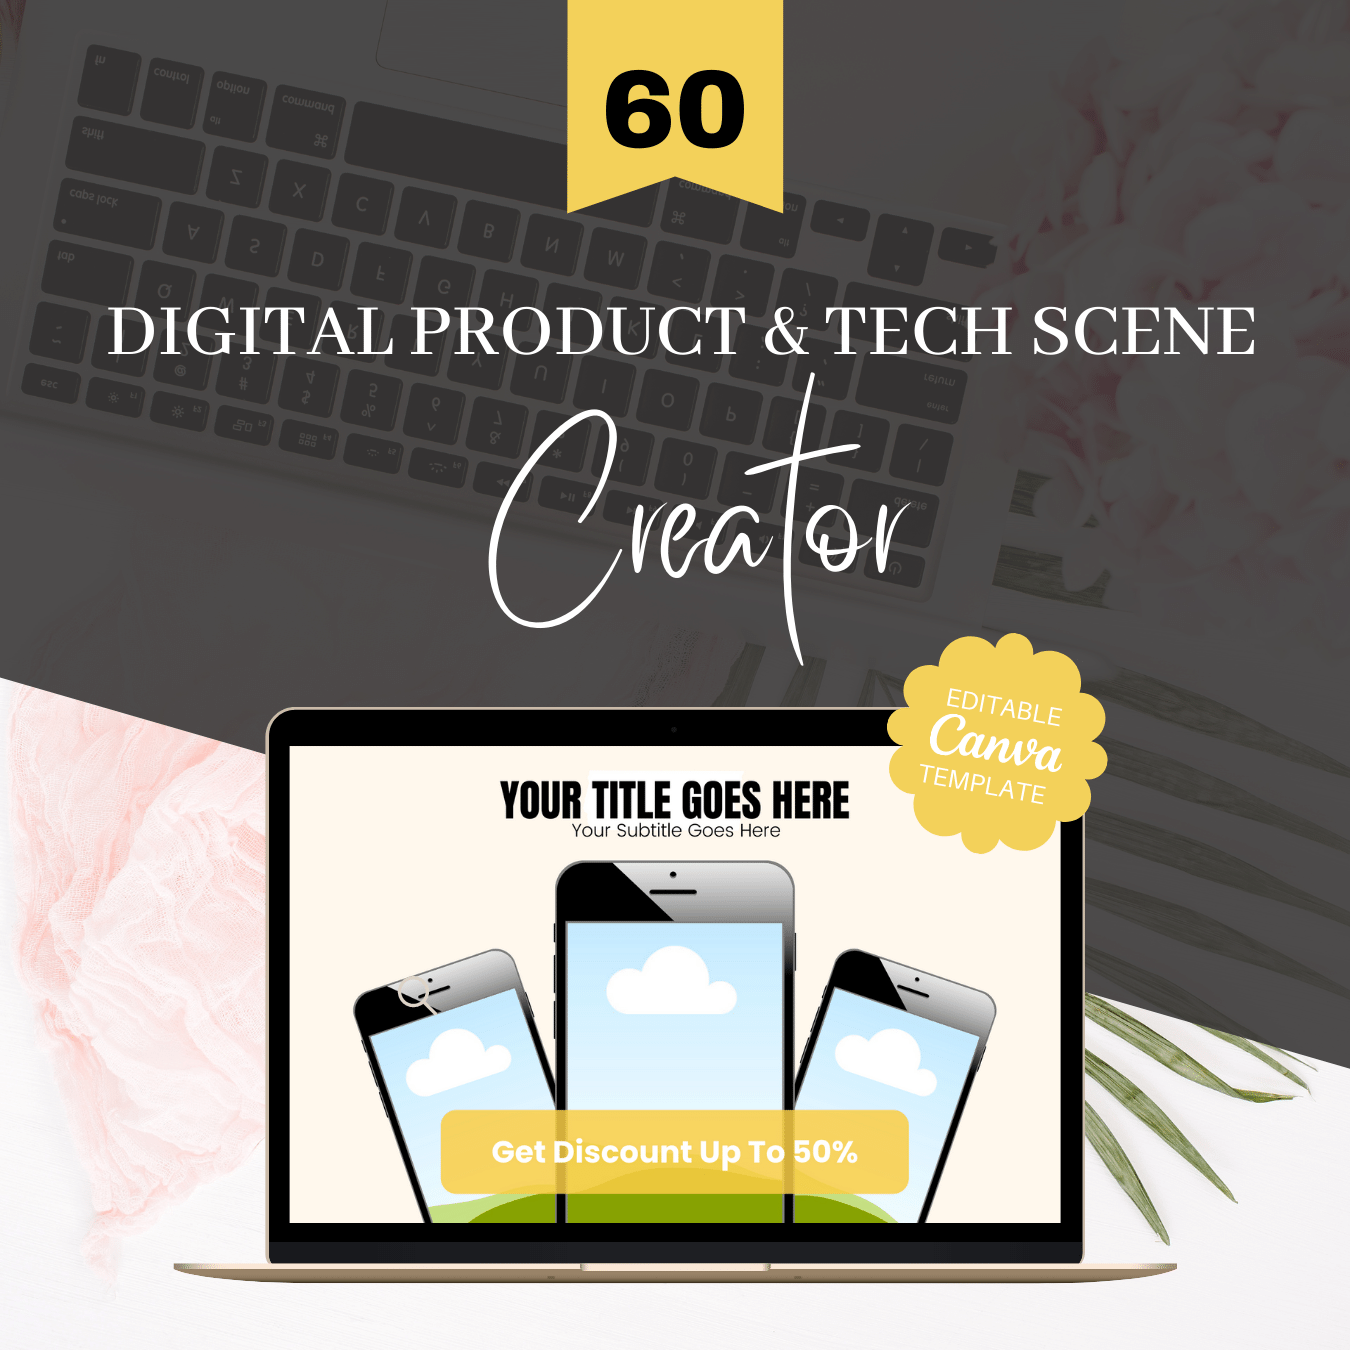 60 Digital Product & Tech Scene Creator